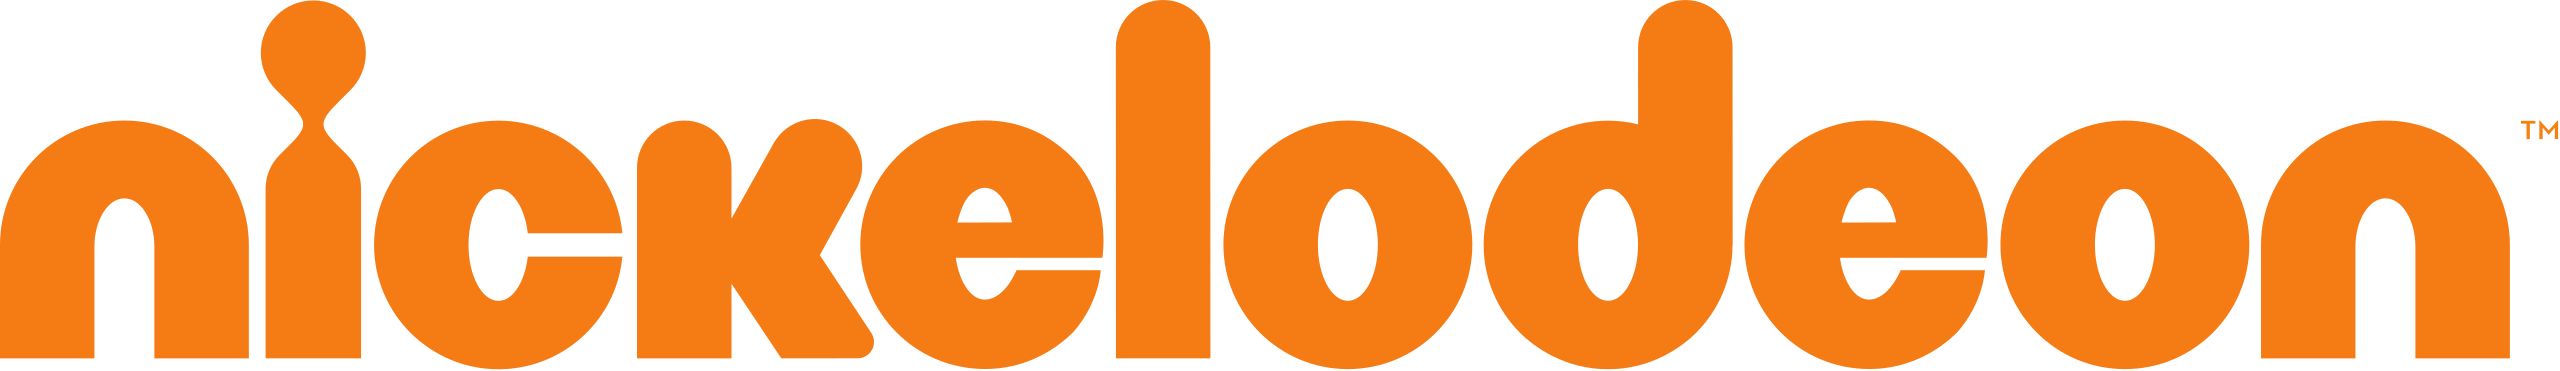 Nickelodeon_2009_logo.svg